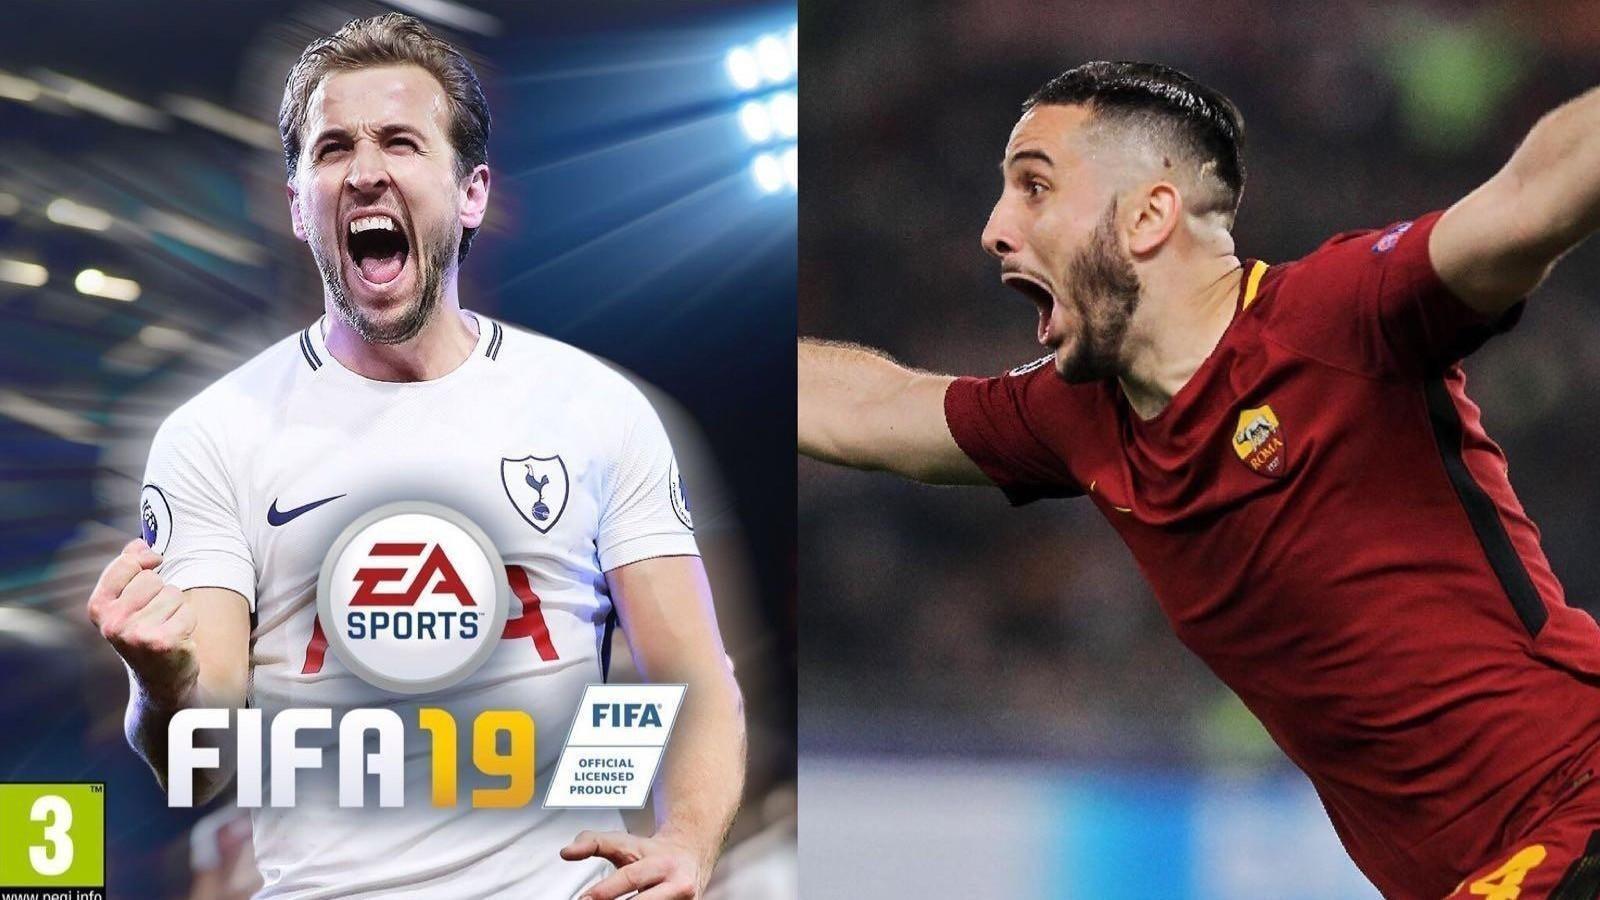 Roma-Frosinone: i giallorossi pubblicano un pronostico giocando a FIFA19